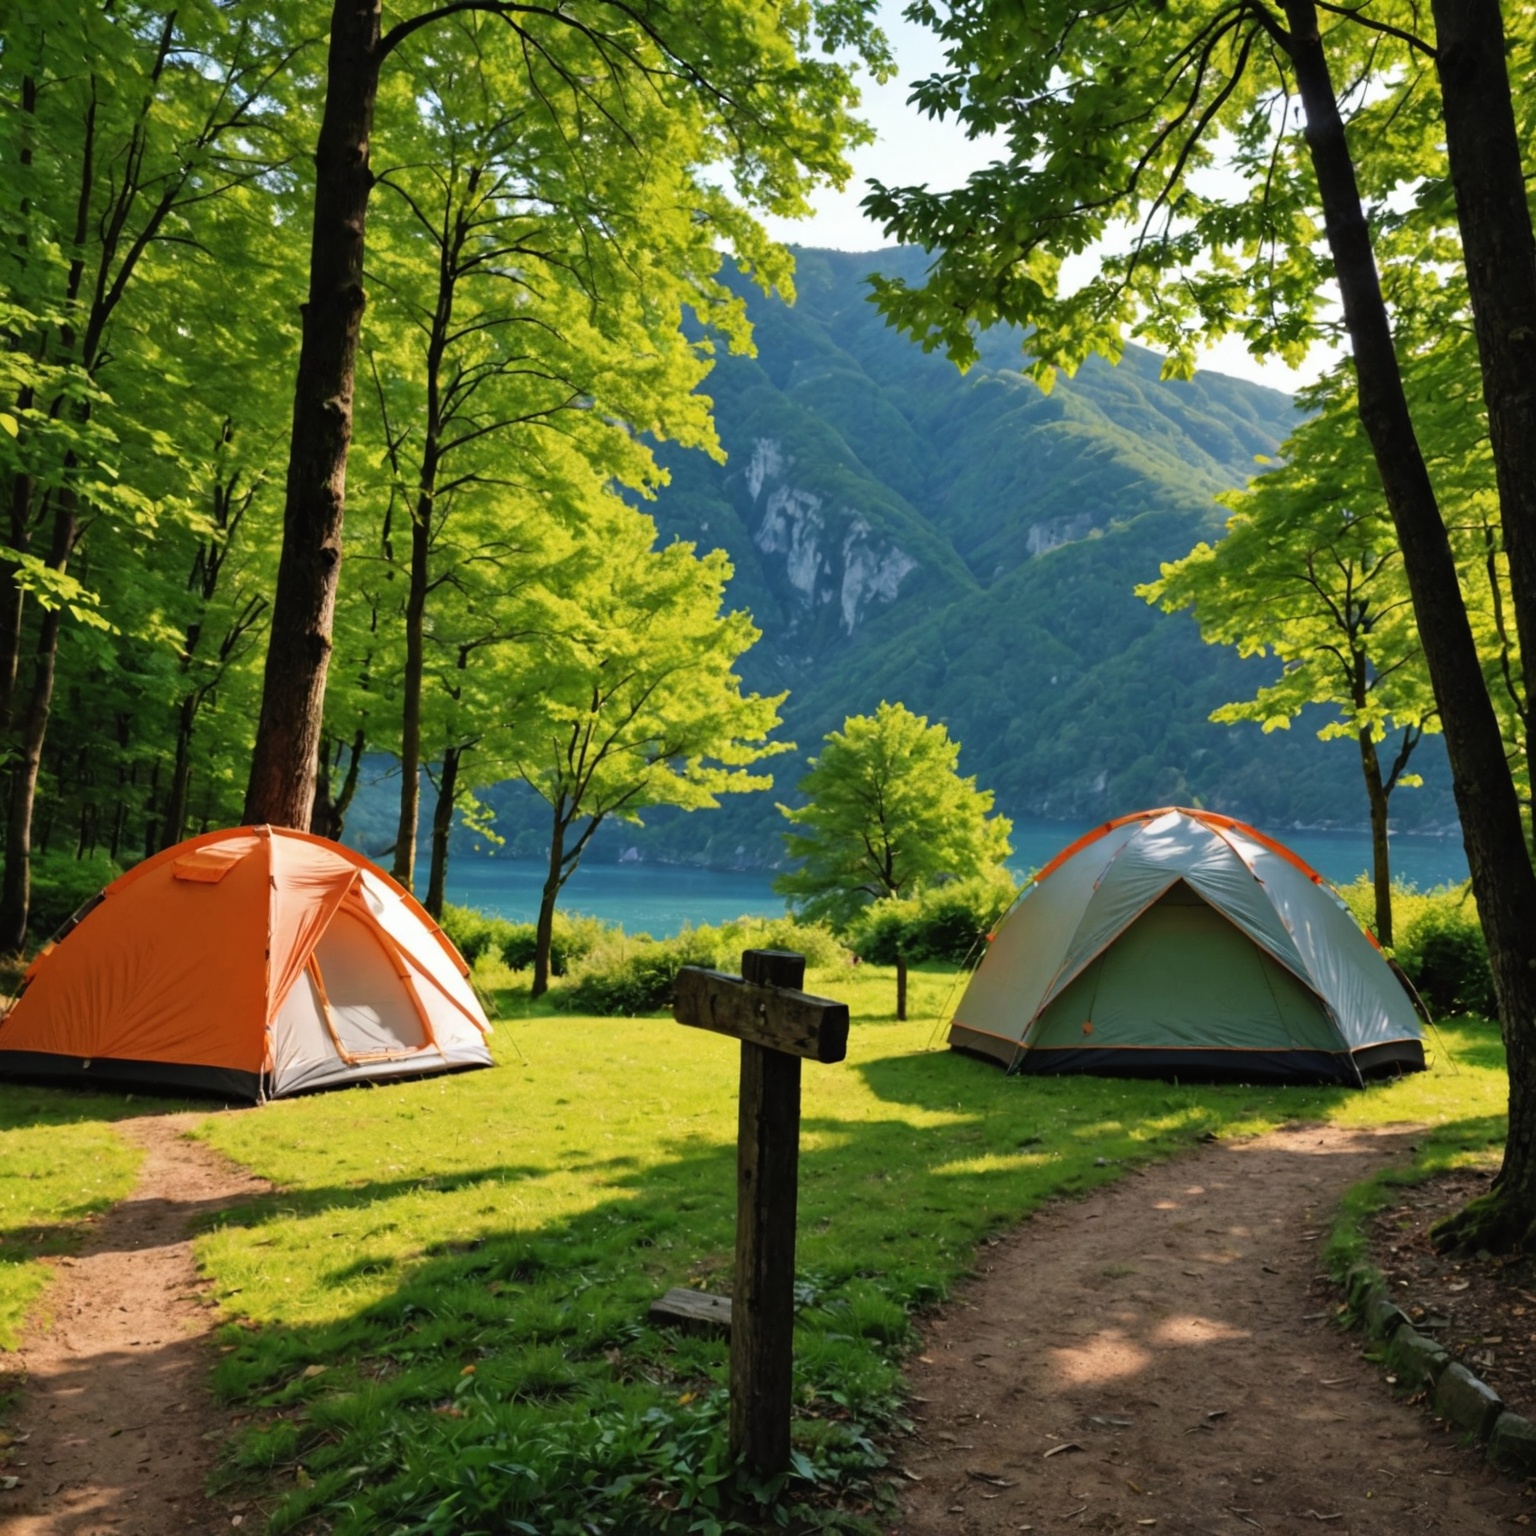 Explorez le Pays Basque Autrement: Séjour Inoubliable en Camping pour Immersion Culturelle Complète